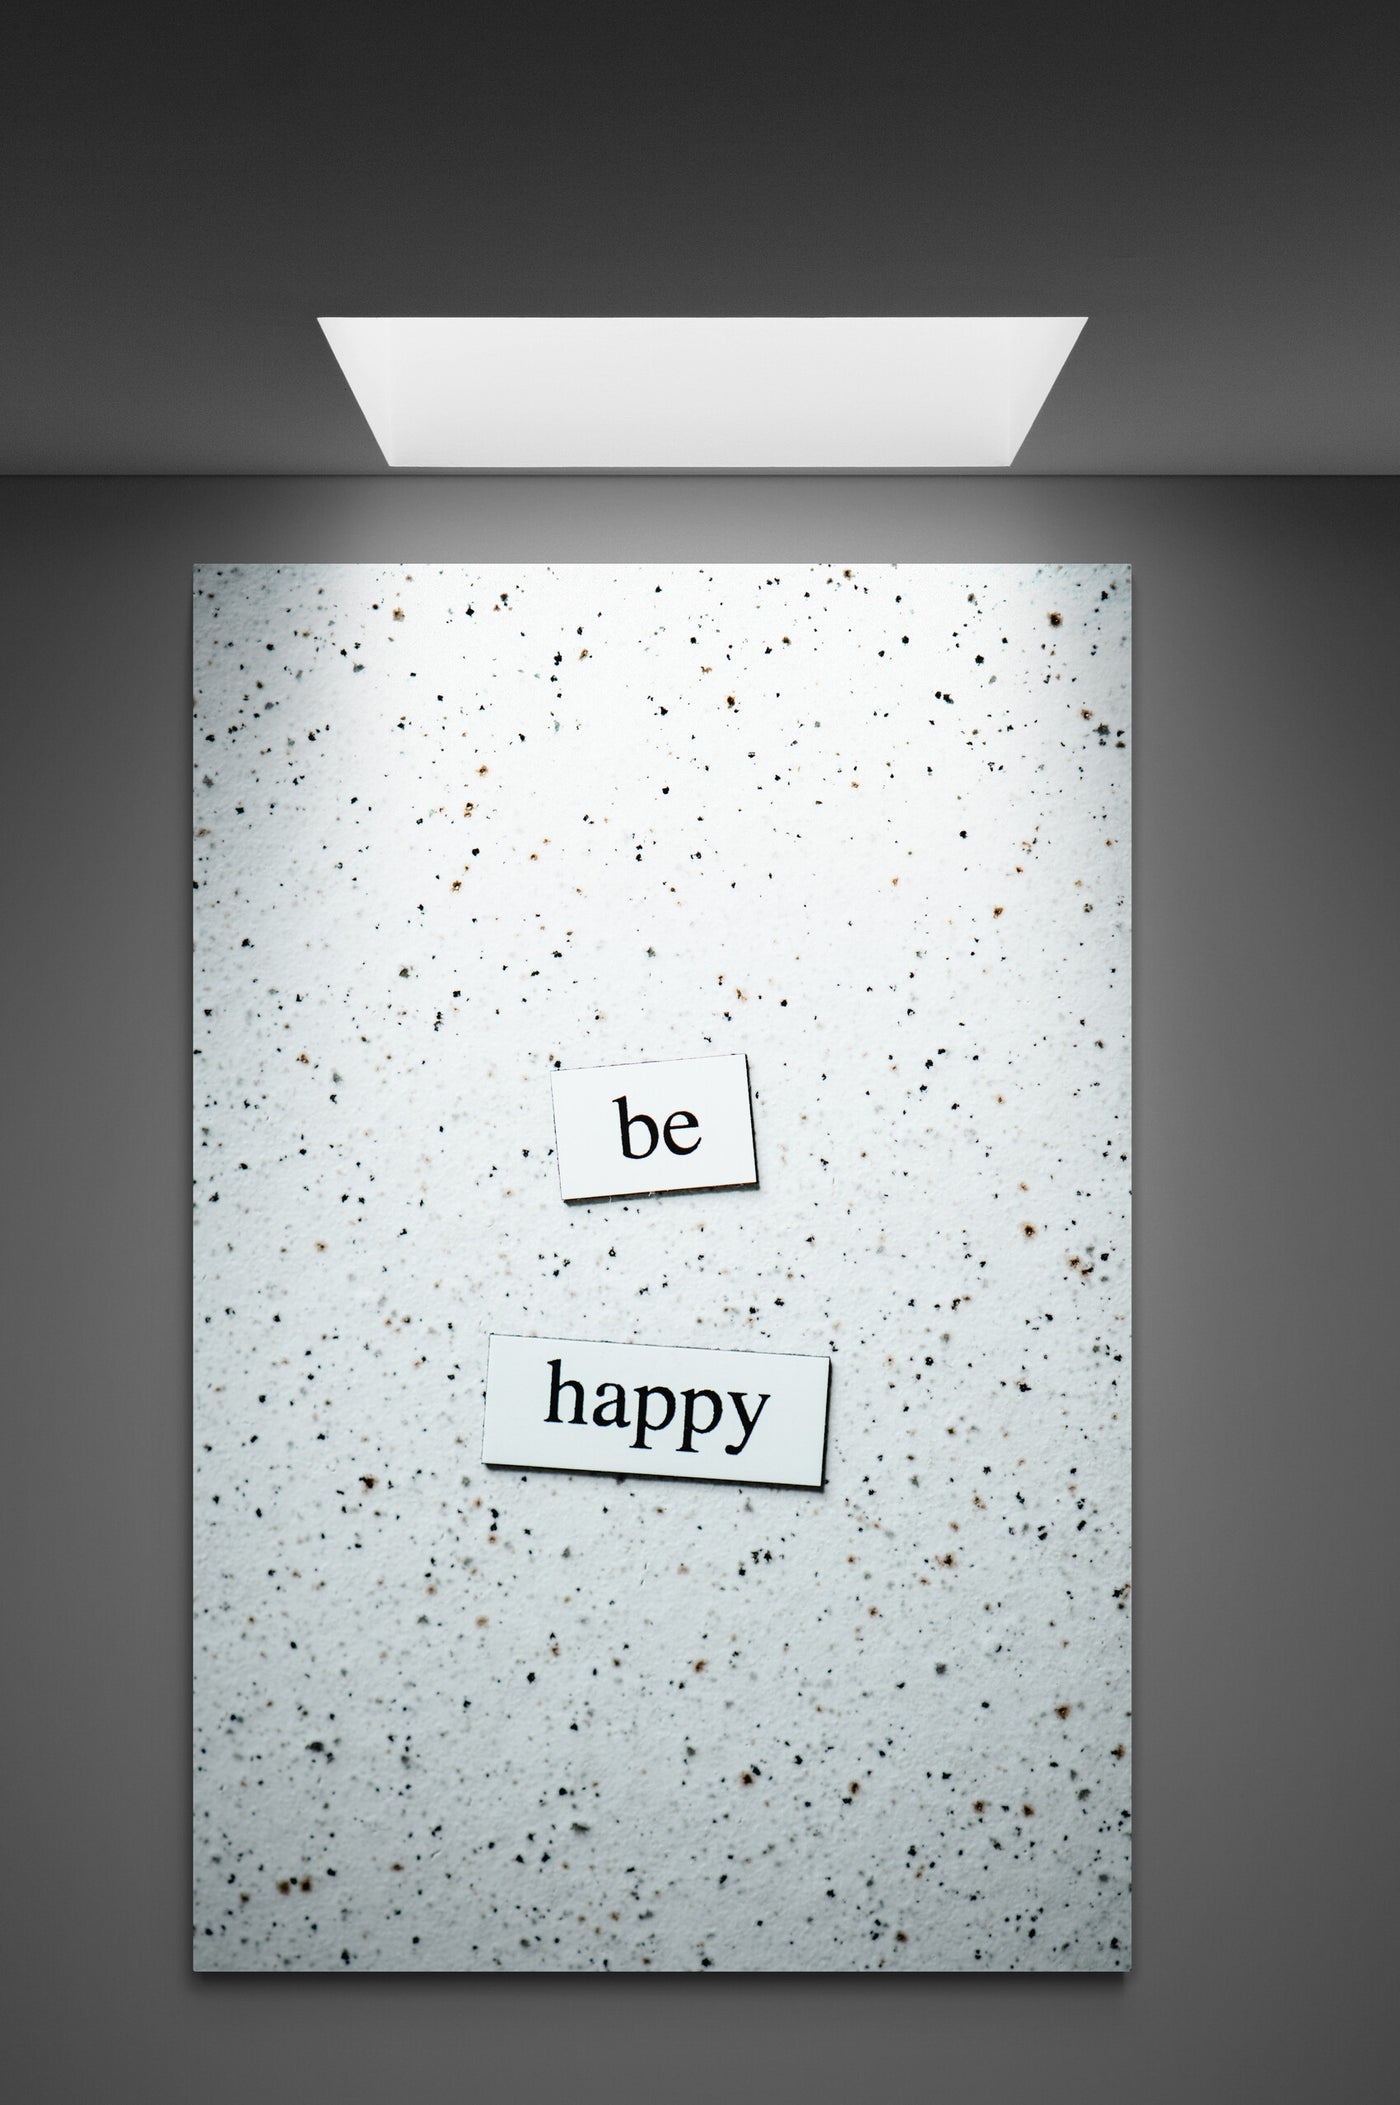 Tablou Canvas "Be happy"